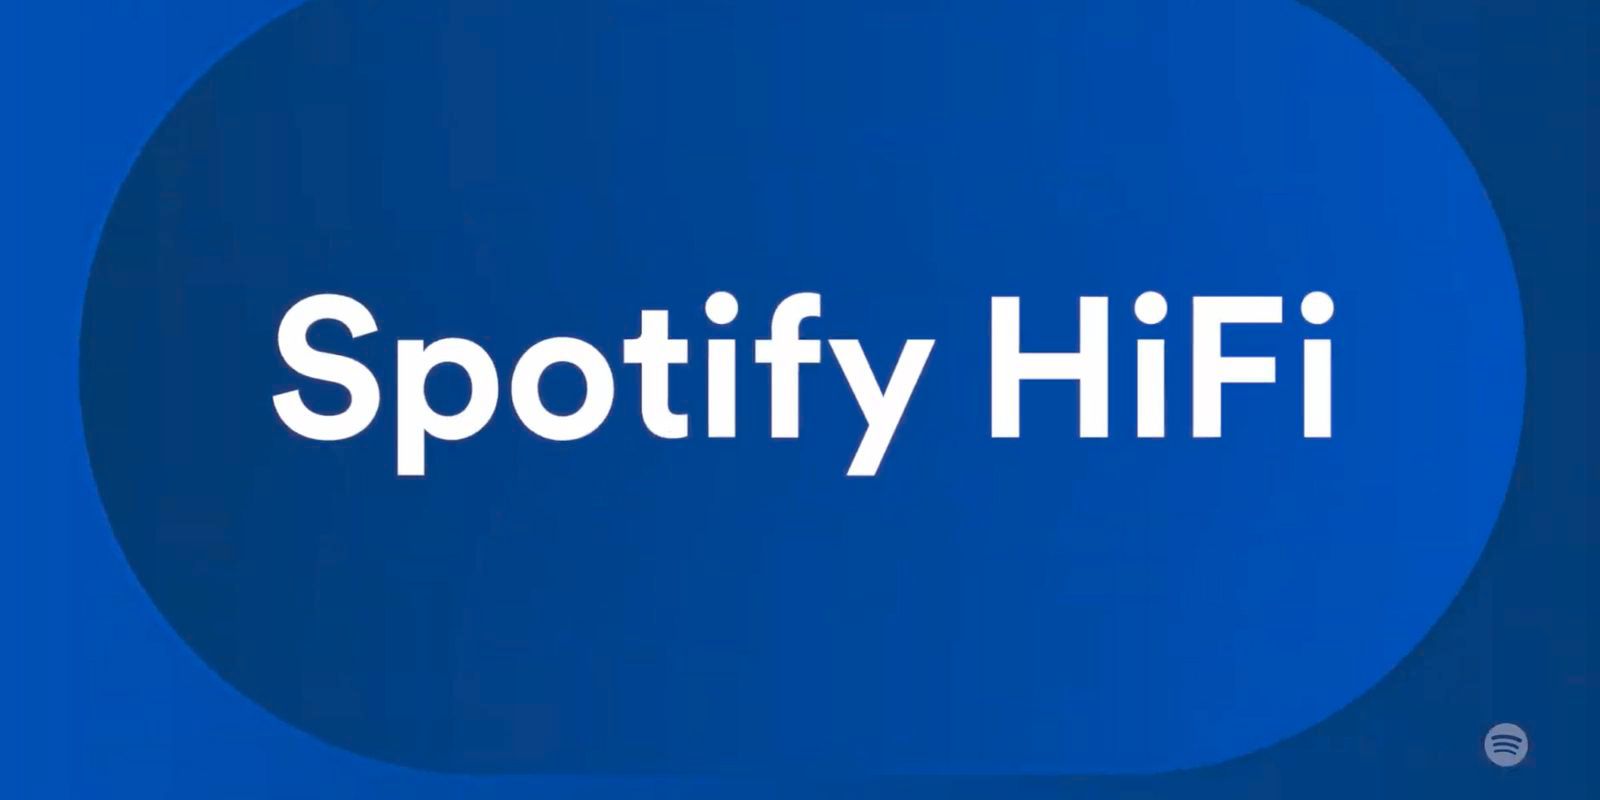 Spotify acaba de compartir una actualización sobre Spotify HiFi, y no es bueno